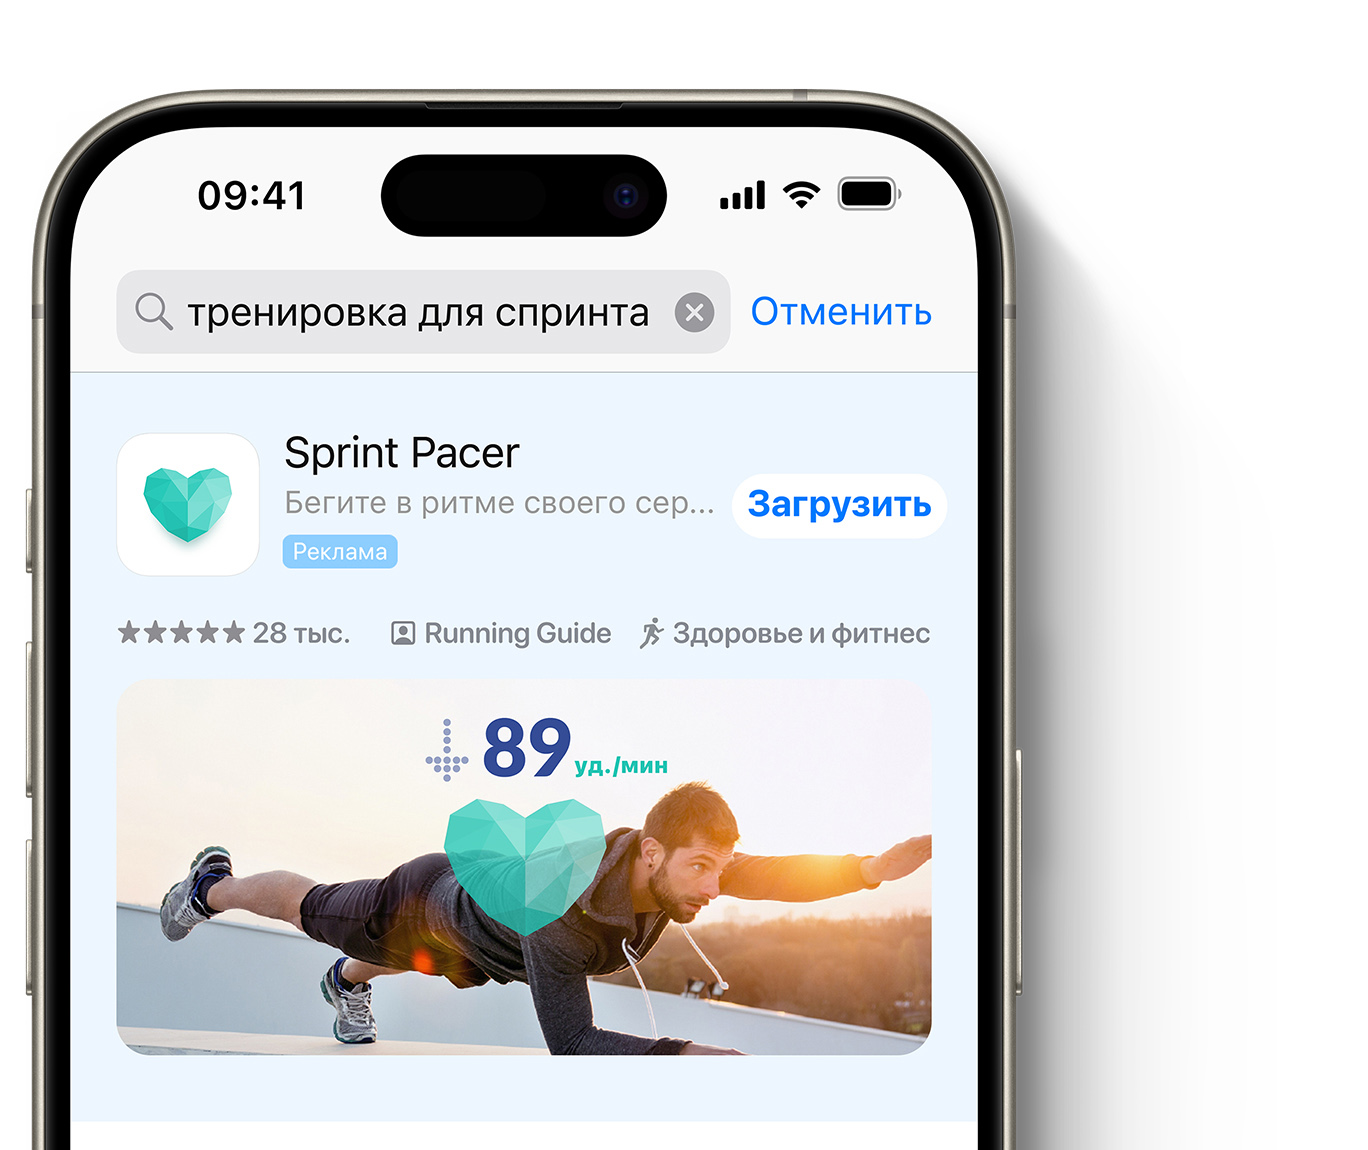 Реклама приложения Sprint Pacer отображается в верхней части результатов поиска App Store. 